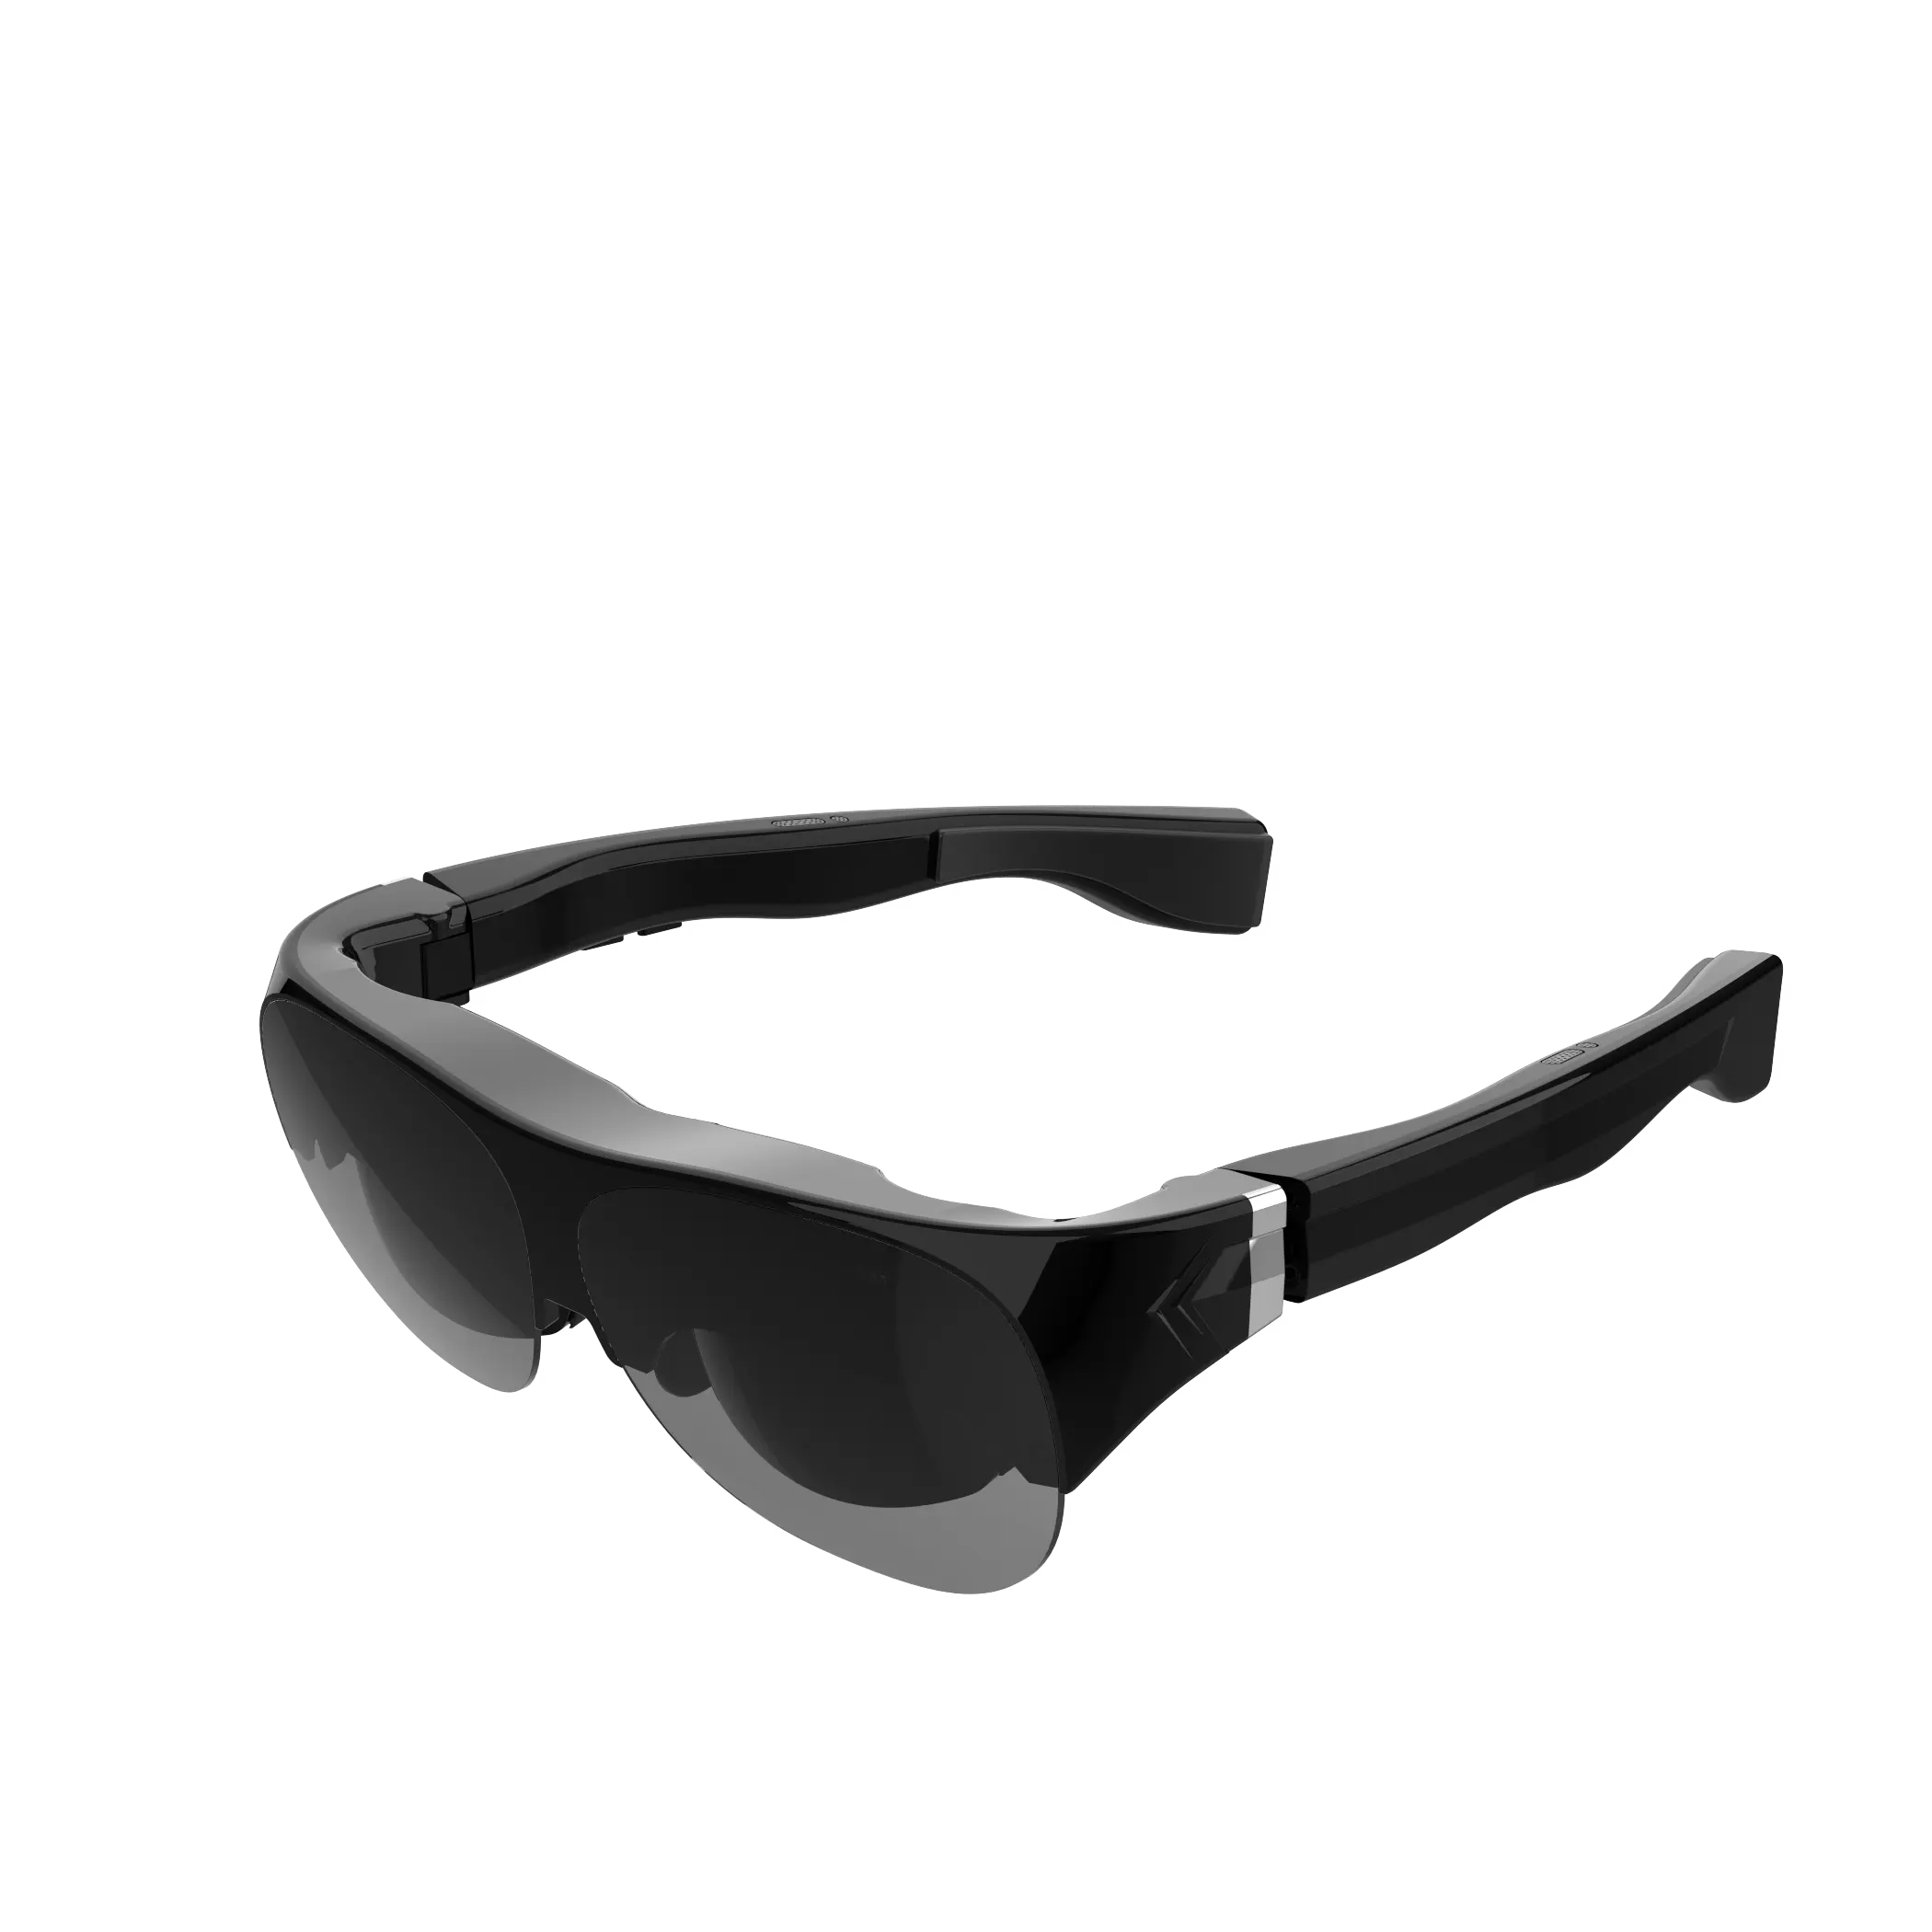 VR SHINECON Metaverse OLED شاشة 4K فائقة الرقة نظارات AR الذكية